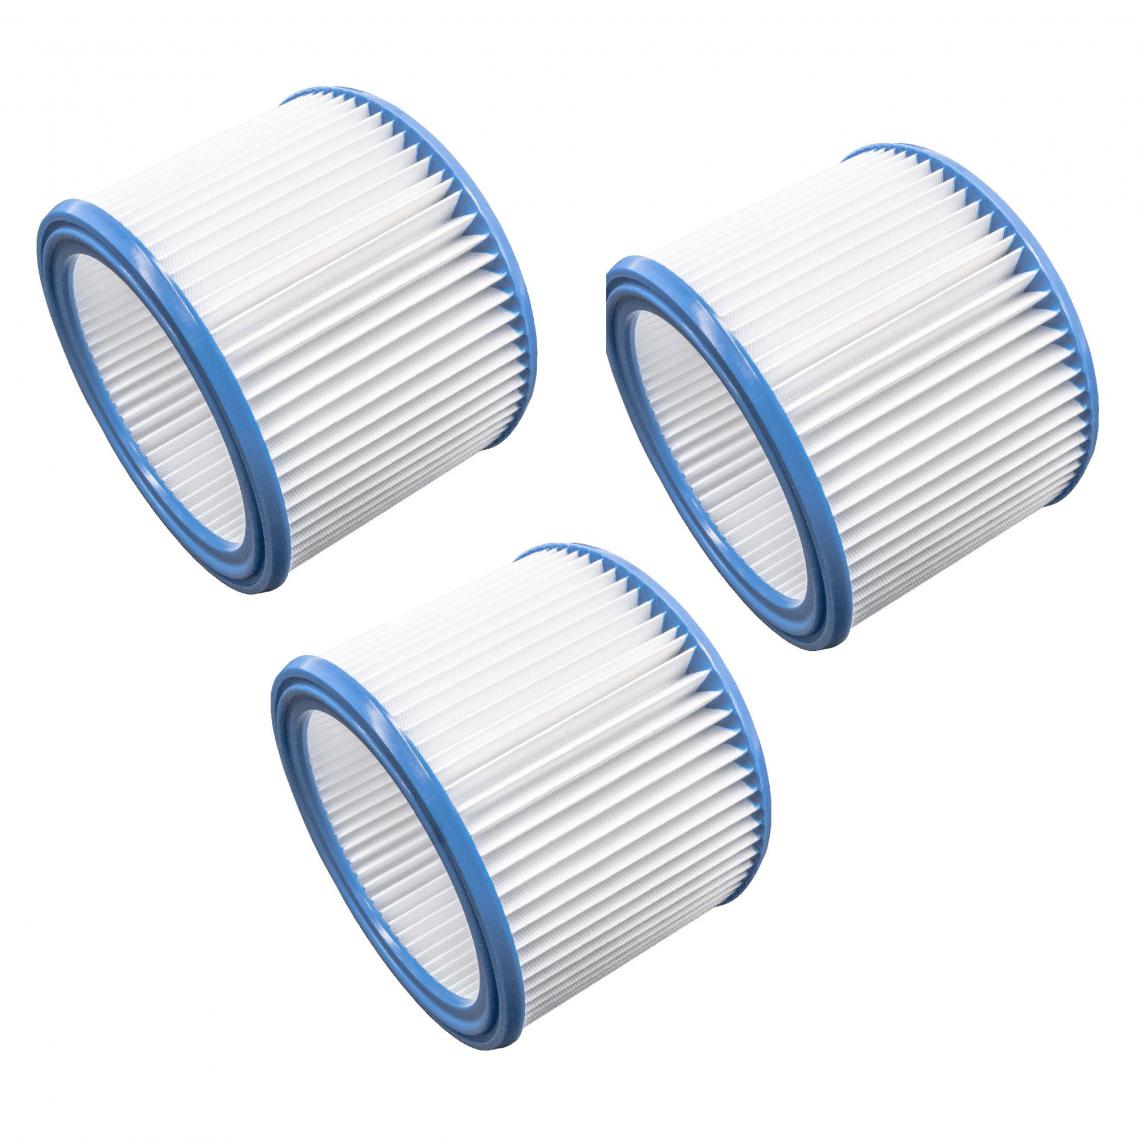 Vhbw - vhbw Set de filtres 3x Filtre plissé compatible avec Nilfisk / WAP Attix 550-01, 550-11 aspirateur à sec ou humide - Filtre à cartouche - Accessoire entretien des sols